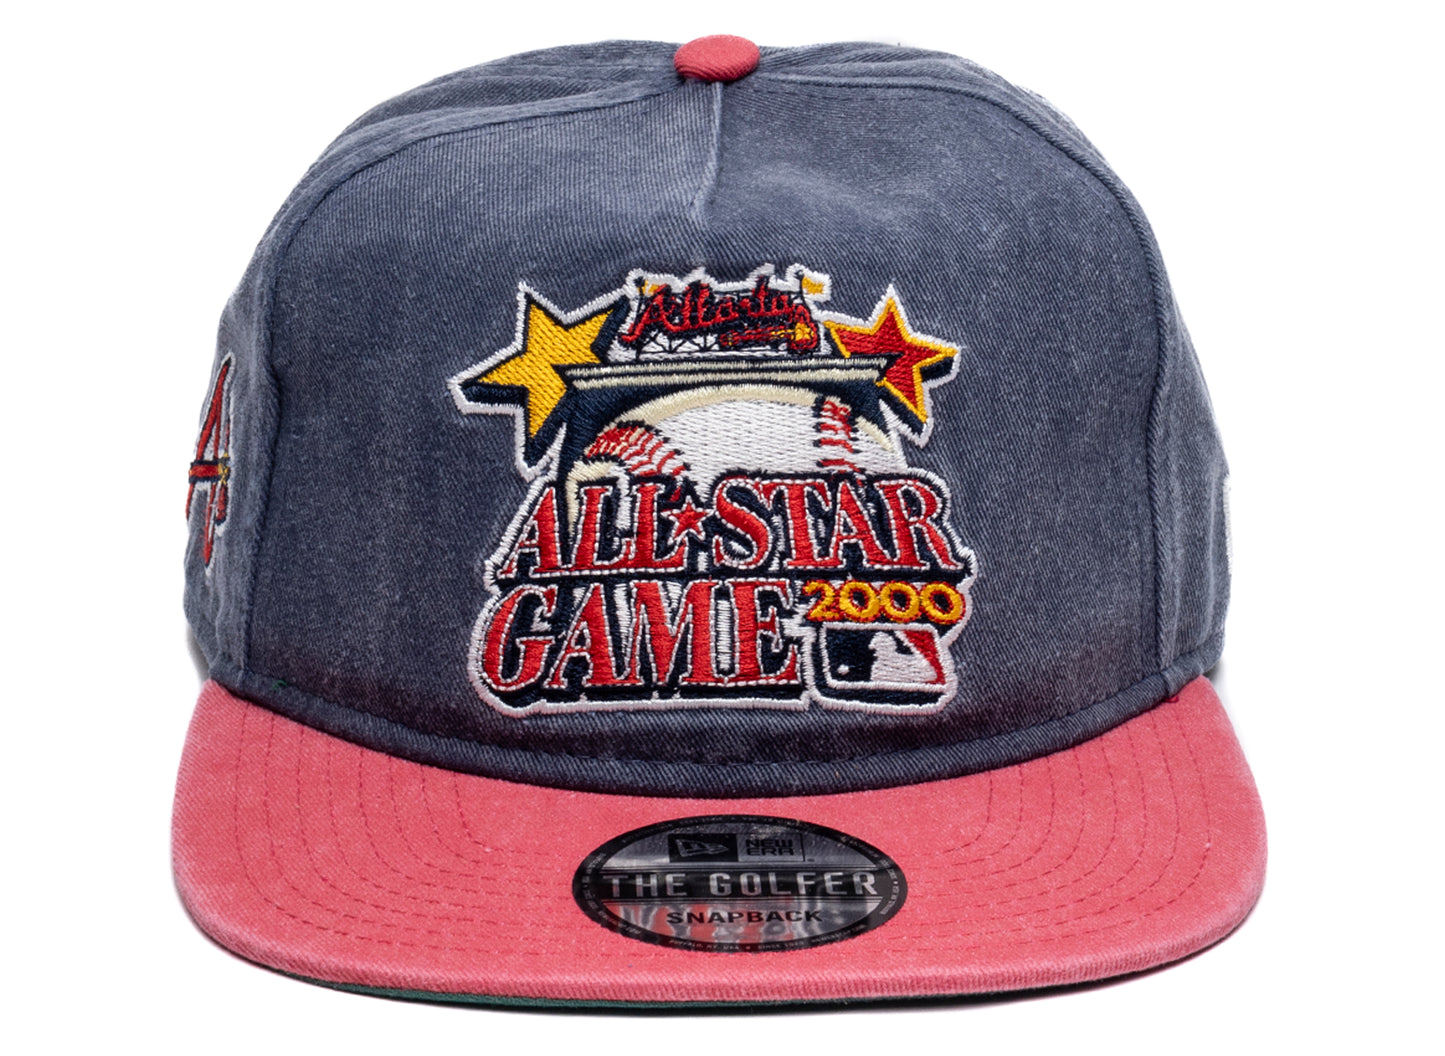 New Era Pigment Dyed Atlanta Braves Golfer Hat xld